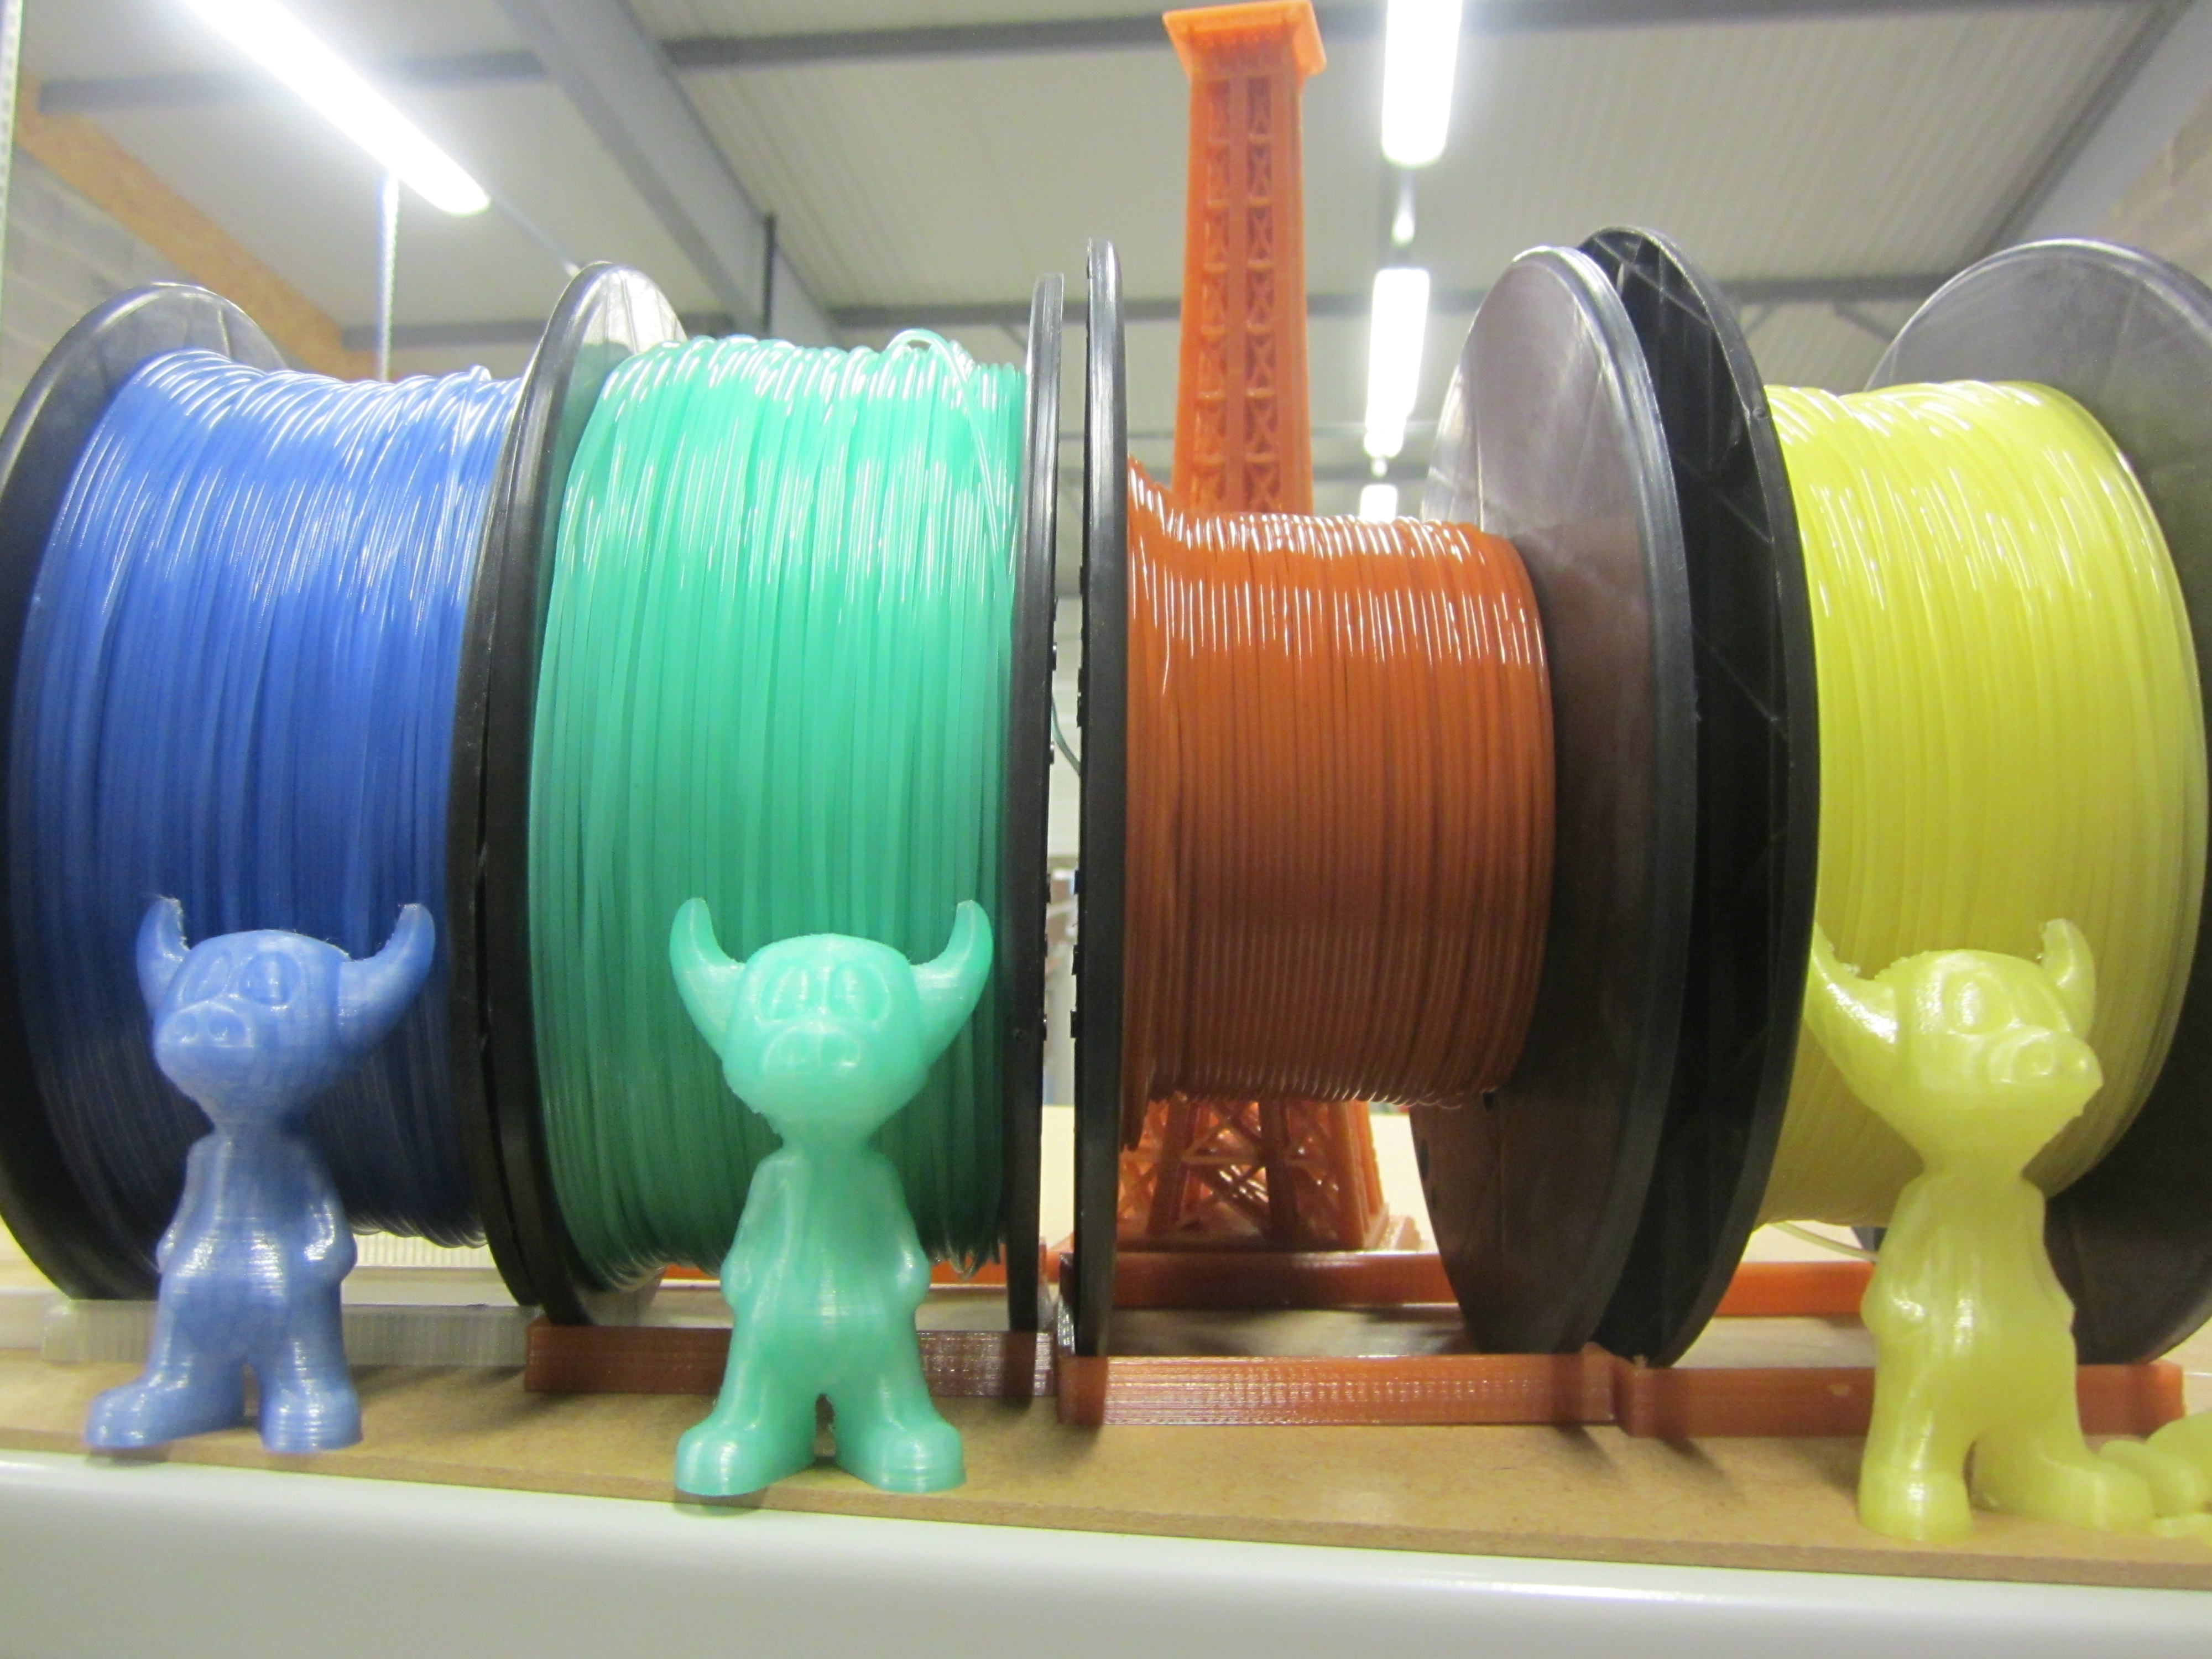 Arianeplast spécialiste dans l'extrusion de matériaux de haute qualité pour imprimantes 3D